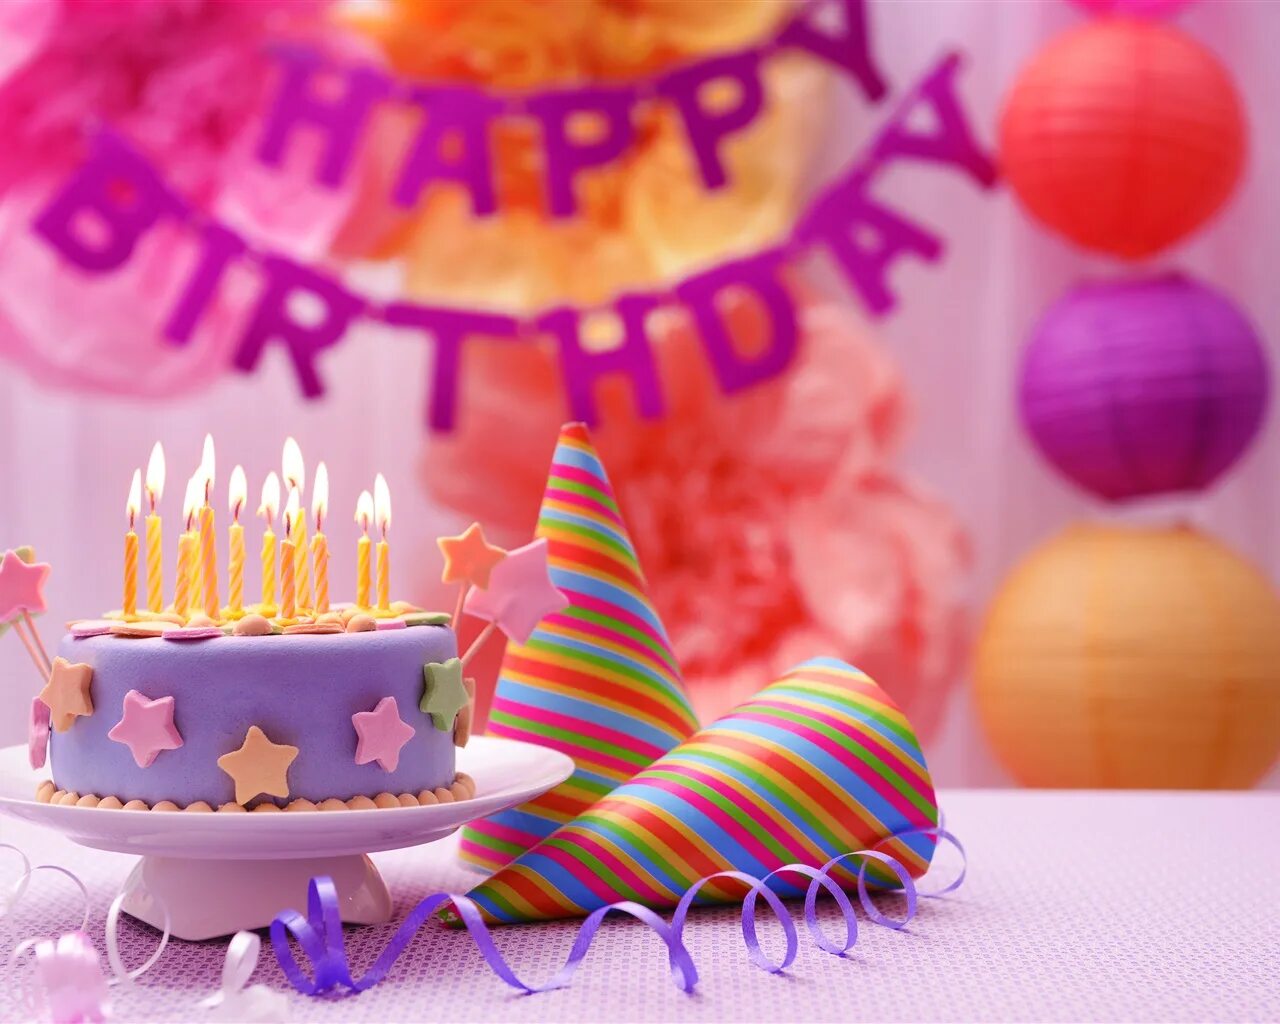 С днем рождения. Тортик с днем рождения. Открытка с днём рождения торт. С днем рождения торт и цветы.